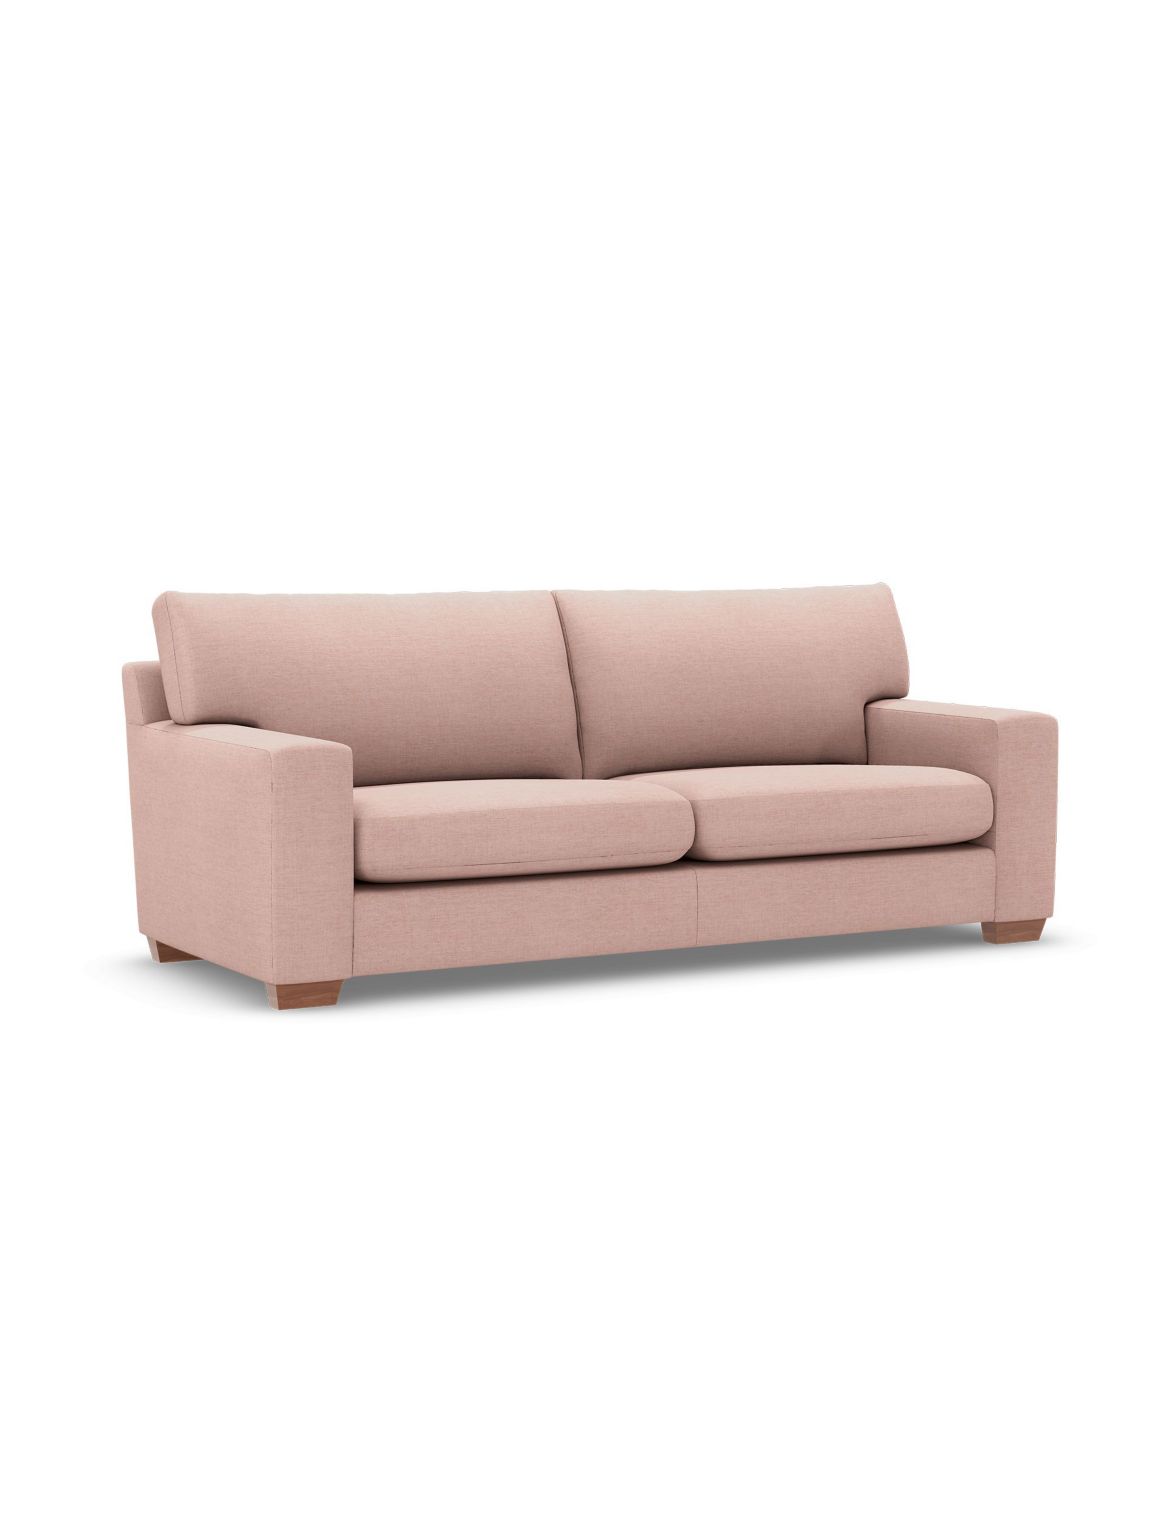 Alfie Large Sofa pink